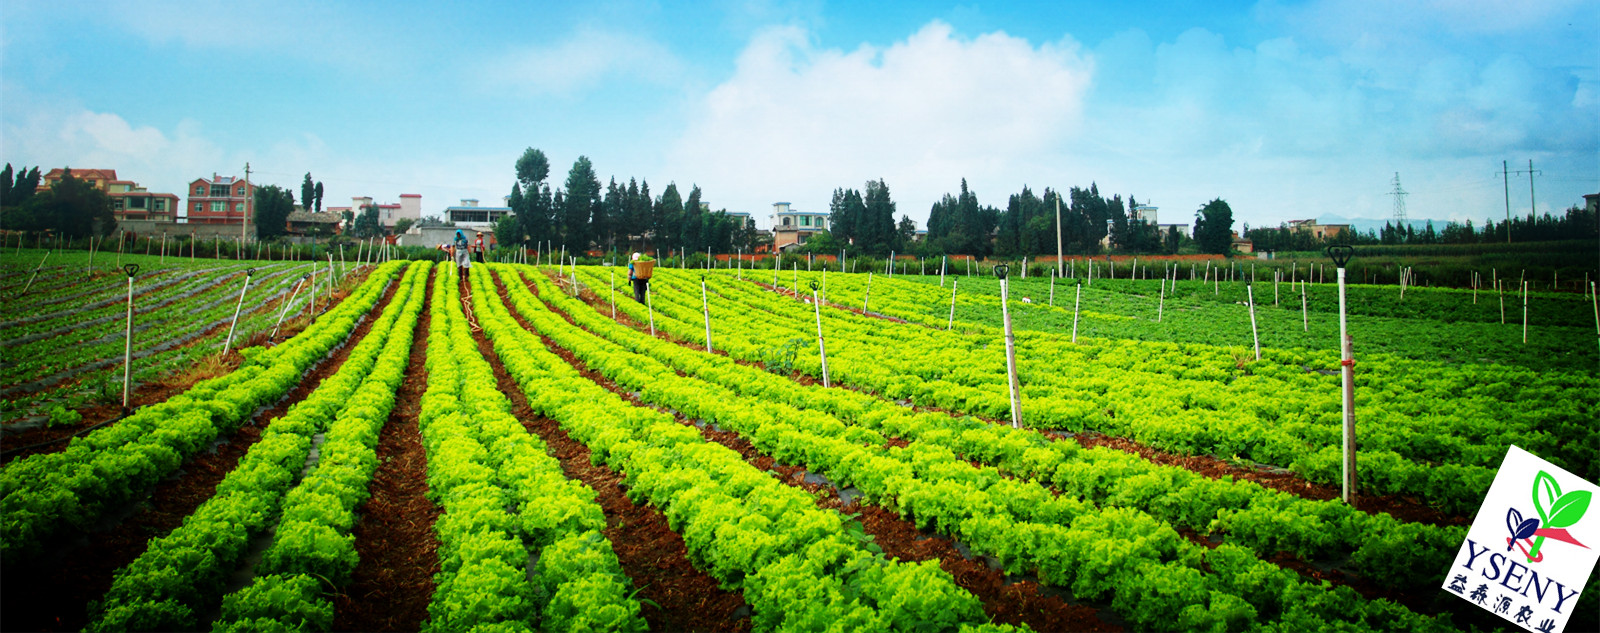 確保口糧安全 穀物基本自給 中國打造農業現代化